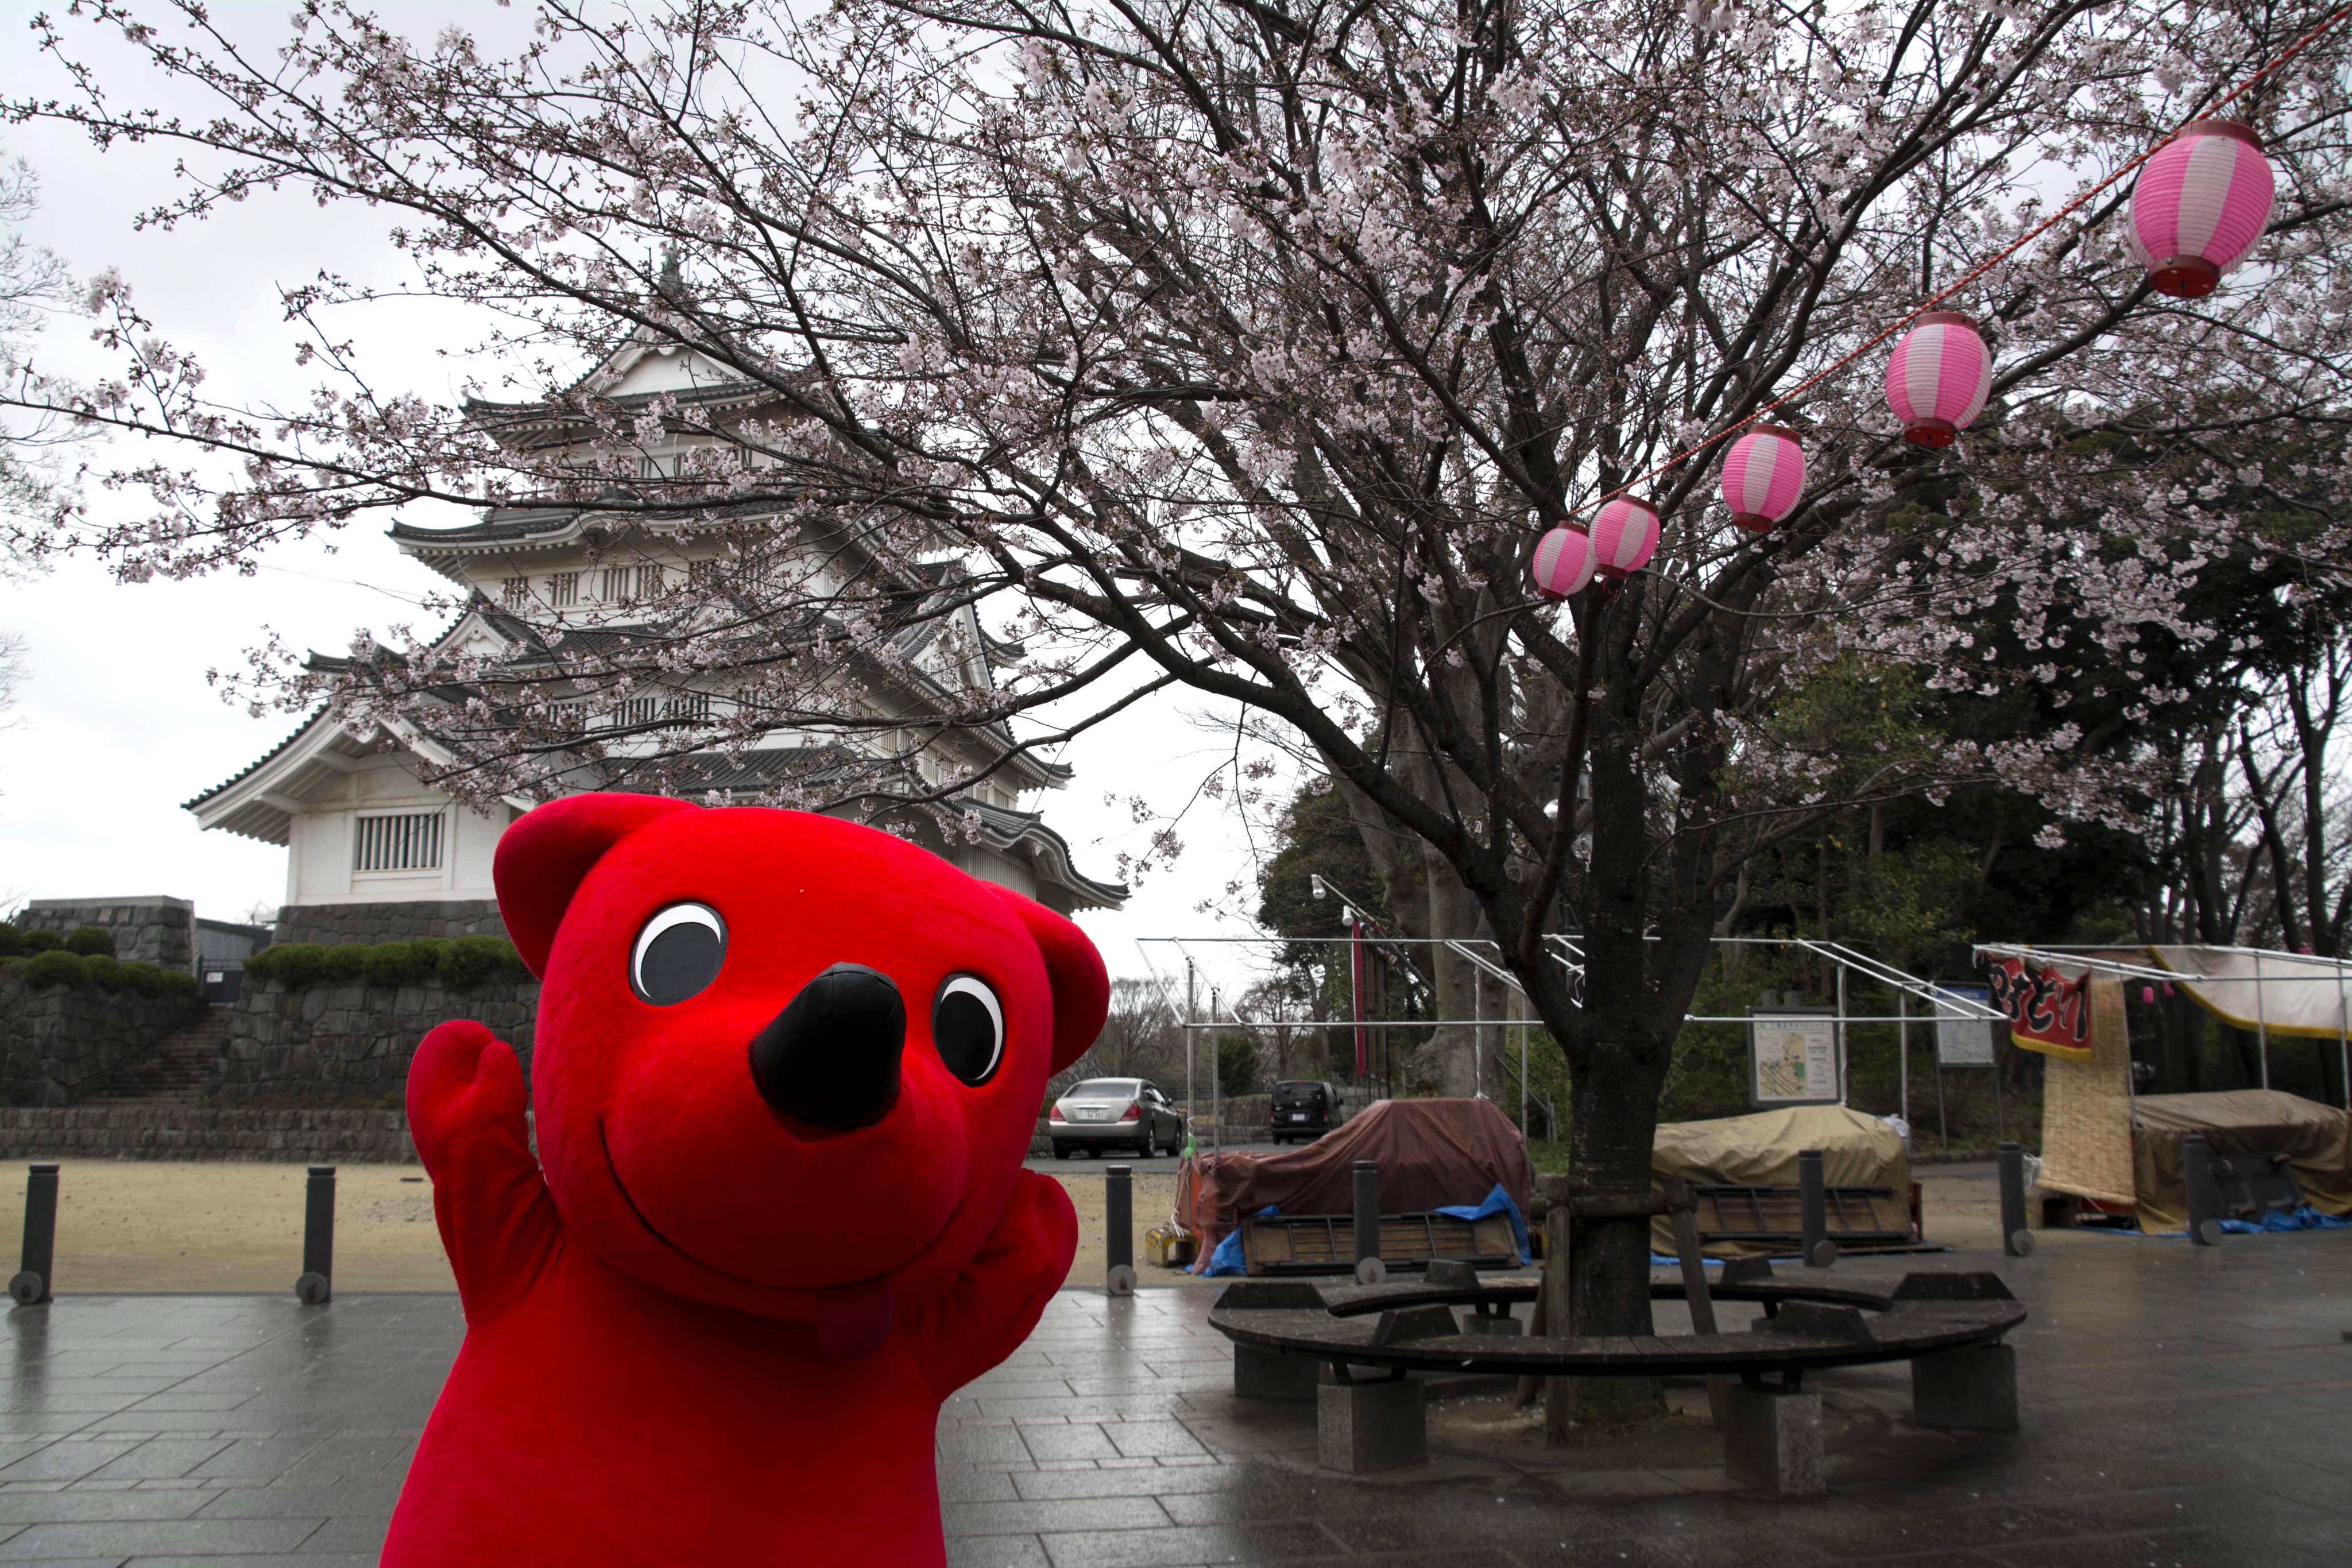 チーバくん Twitterren もうすぐ 桜 の季節だね 千葉市の 亥鼻公園 では 3月31日から4月8日まで 千葉城 さくら祭り が開催されるよ 約100本のソメイヨシノが咲いて 夜になると 千葉城 のライトアップされてきれいなんだよね みんなもお花見を楽しんでね